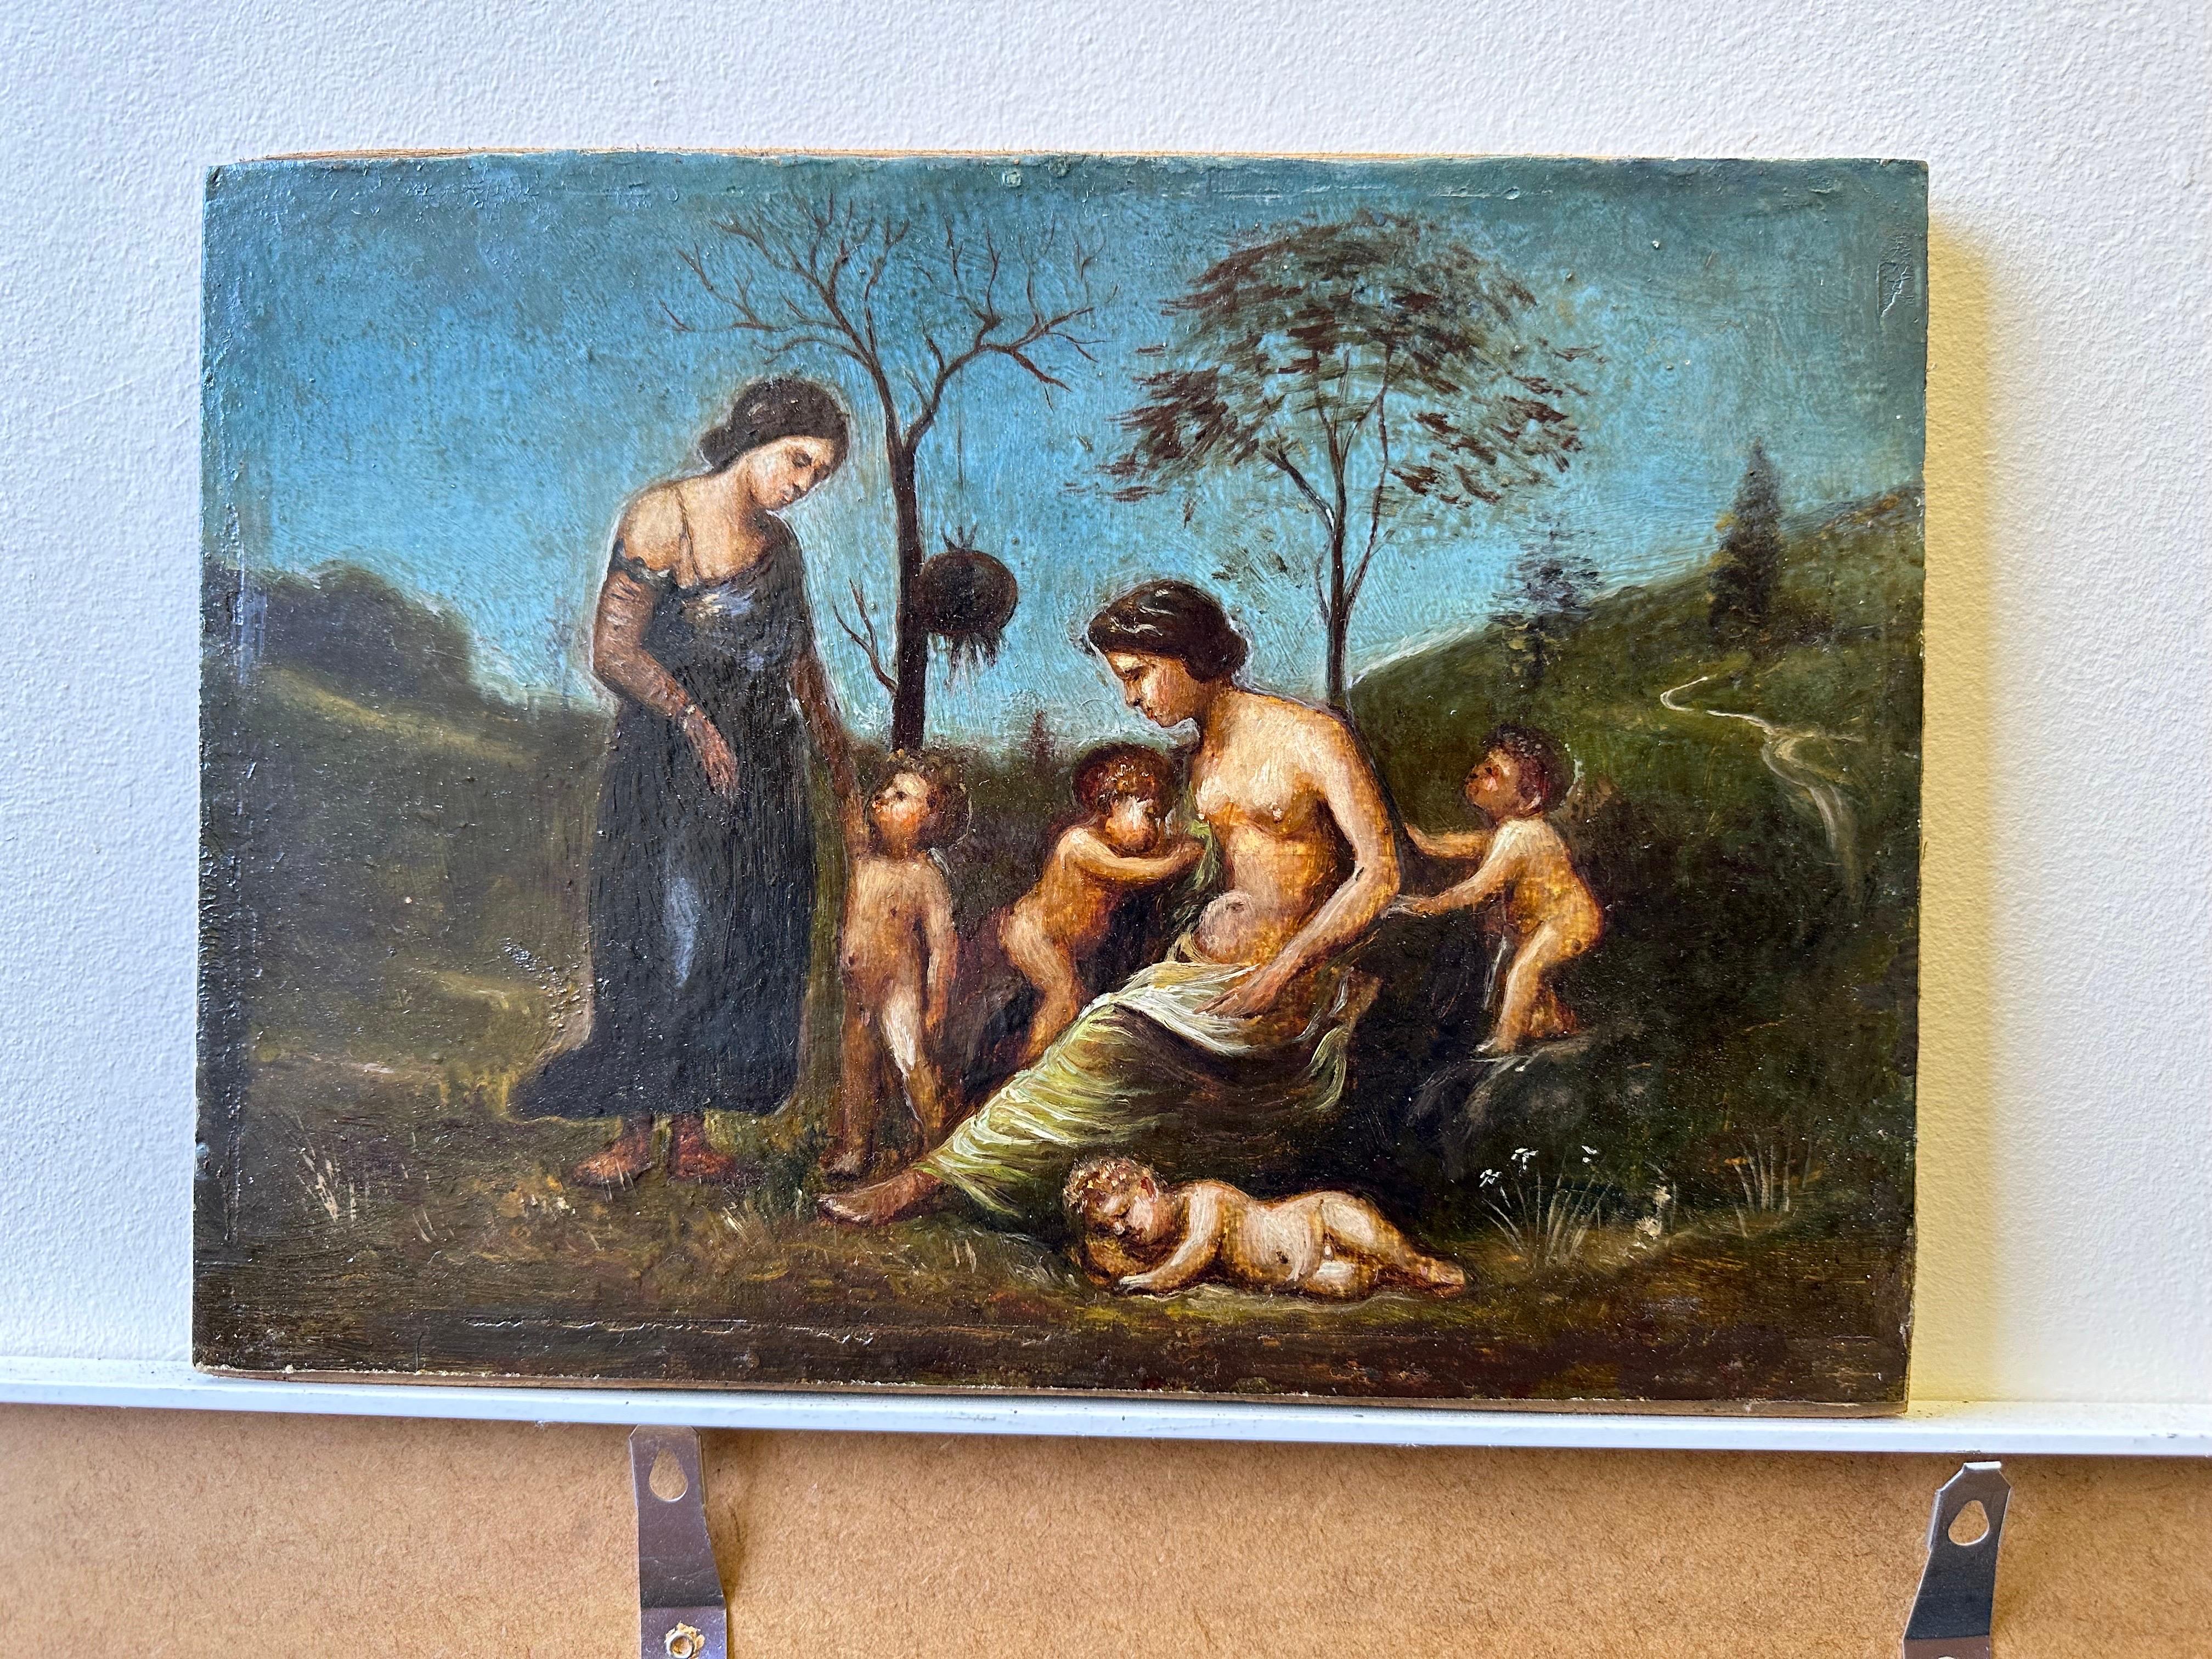 Sehr schönes italienisches Ölgemälde des 18. Jahrhunderts Aktfiguren in klassischer Landschaft – Painting von Italian 18th Century